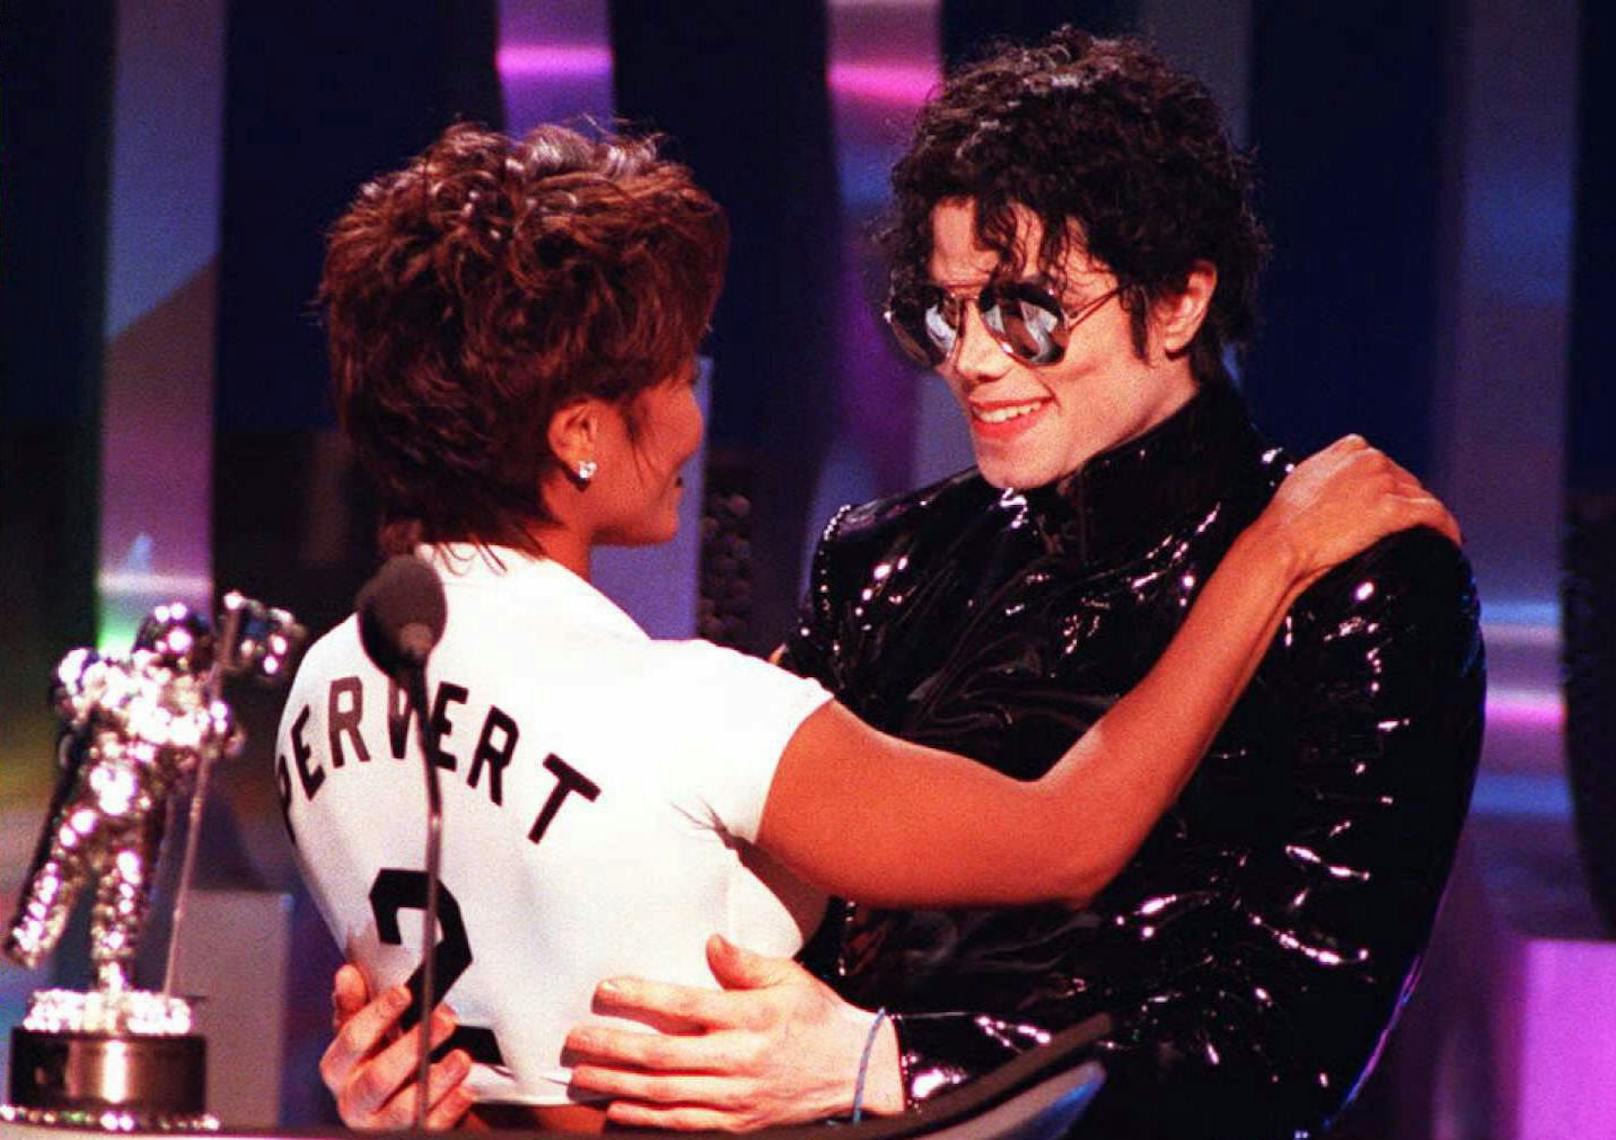 1995 erhalten Michael und Janet Jackson den MTV Award für das Beste Video "Scream".